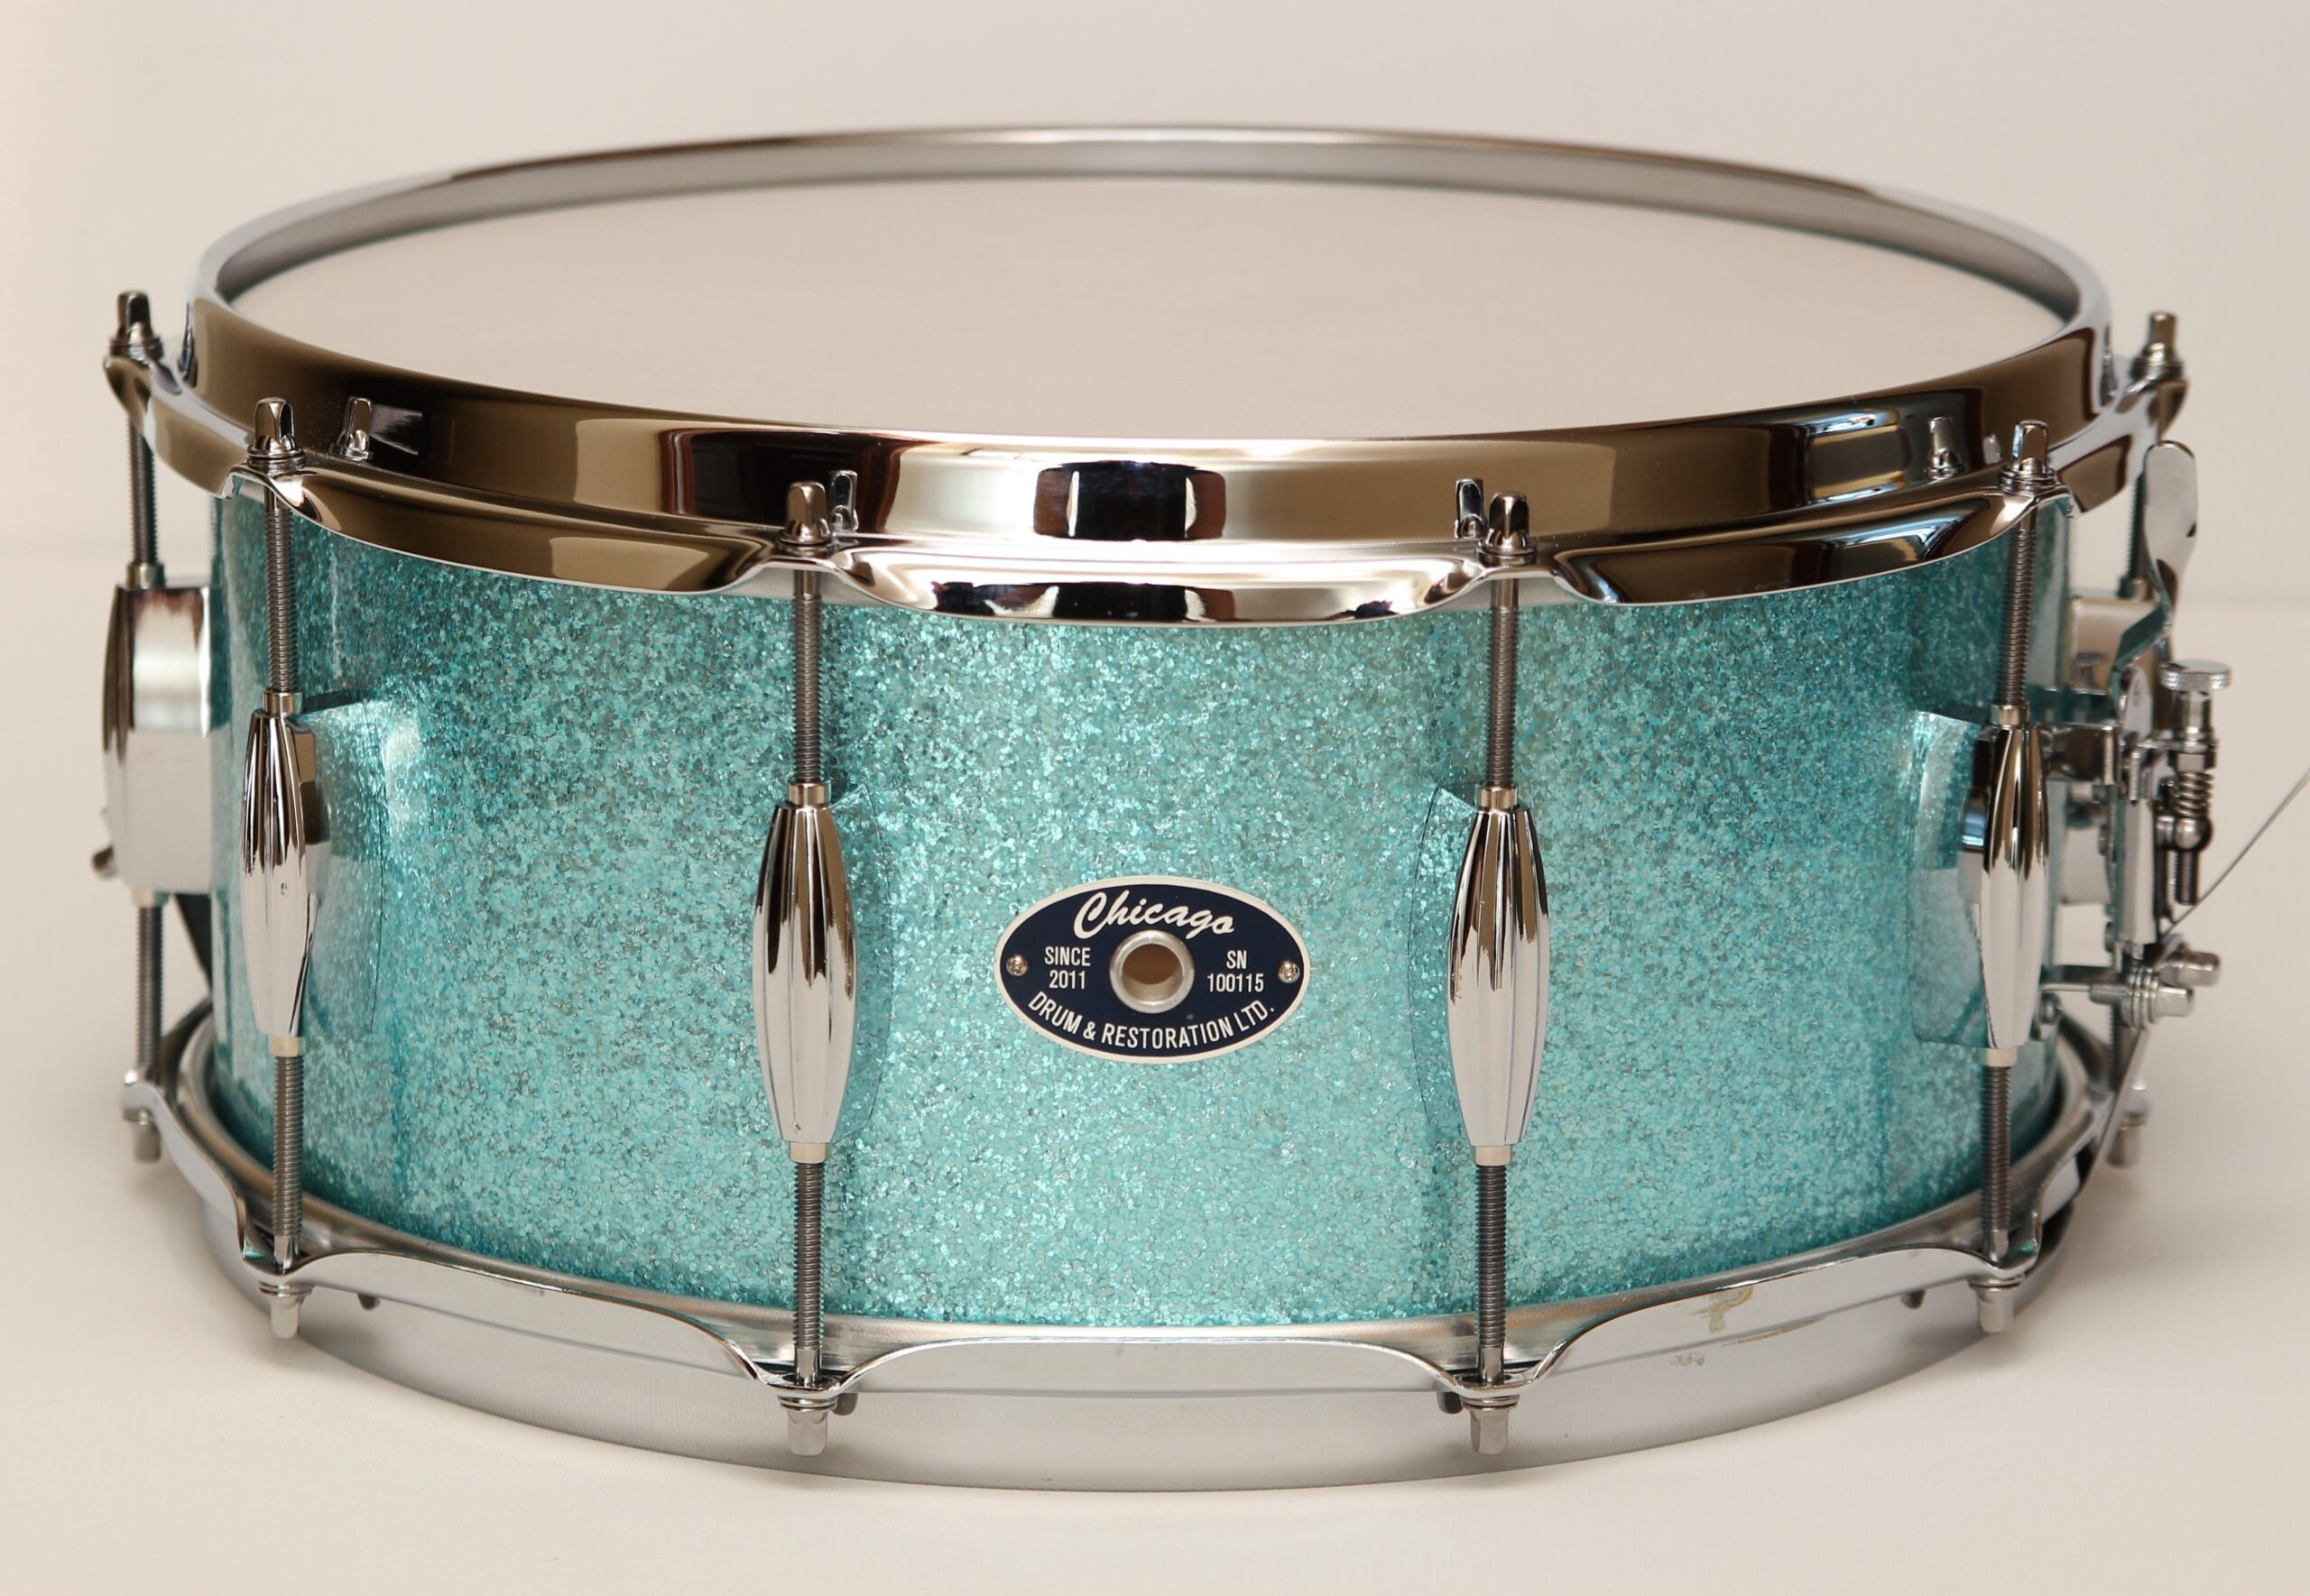 Snare Drum - 6-1/2" Turquoise Sparkle - Chicago Drum